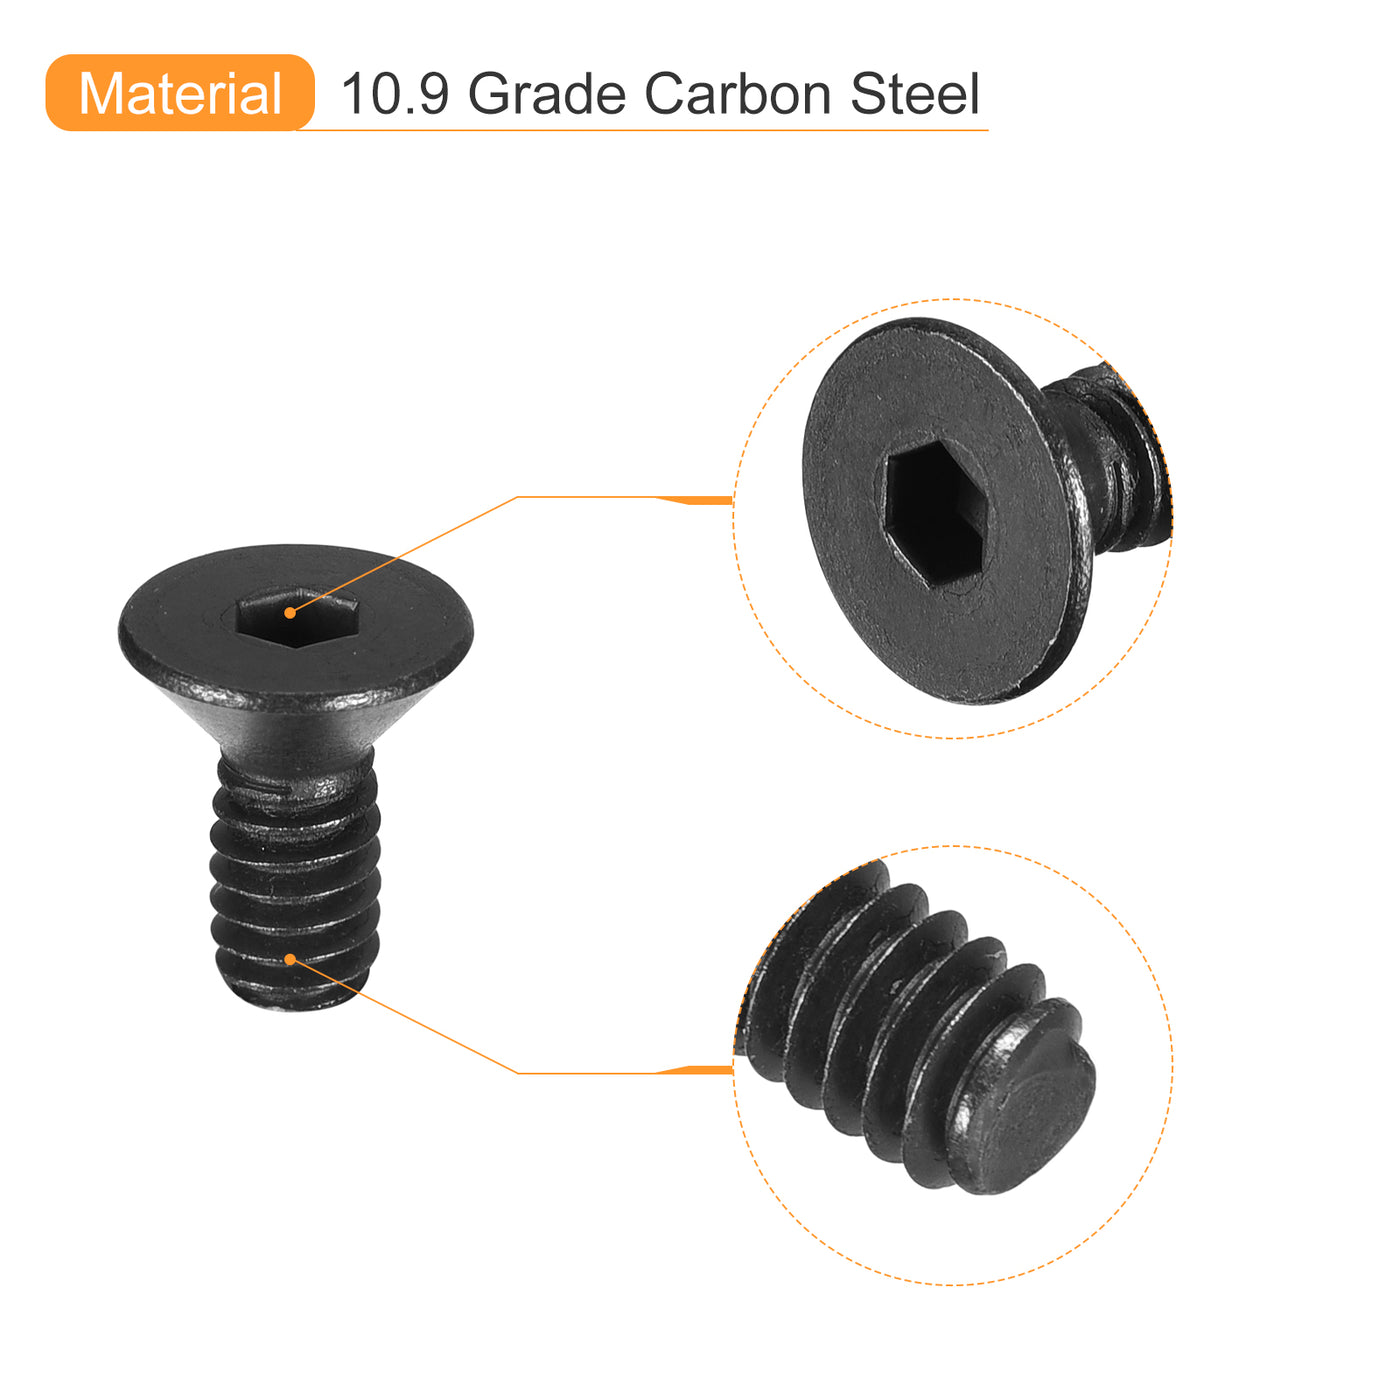 uxcell Uxcell #6-32x3/8" Flat Head Socket Cap Screws, 10.9 Grade Carbon, Black, 20pcs